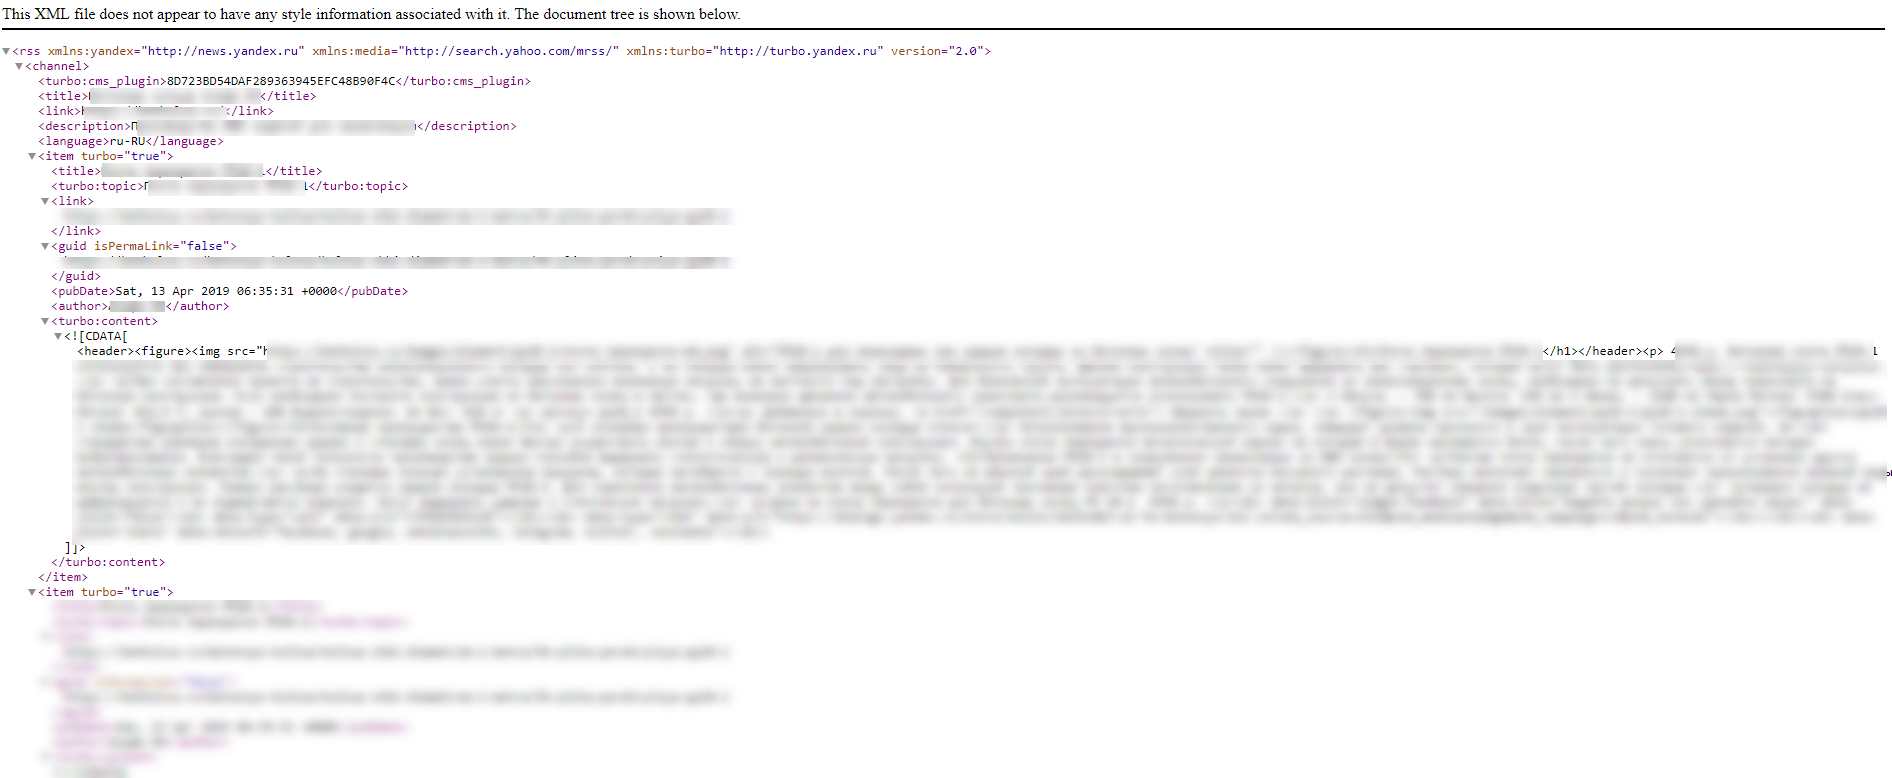 Скриншот: Как сделать турбо-страницы для Яндекс: создание RSS